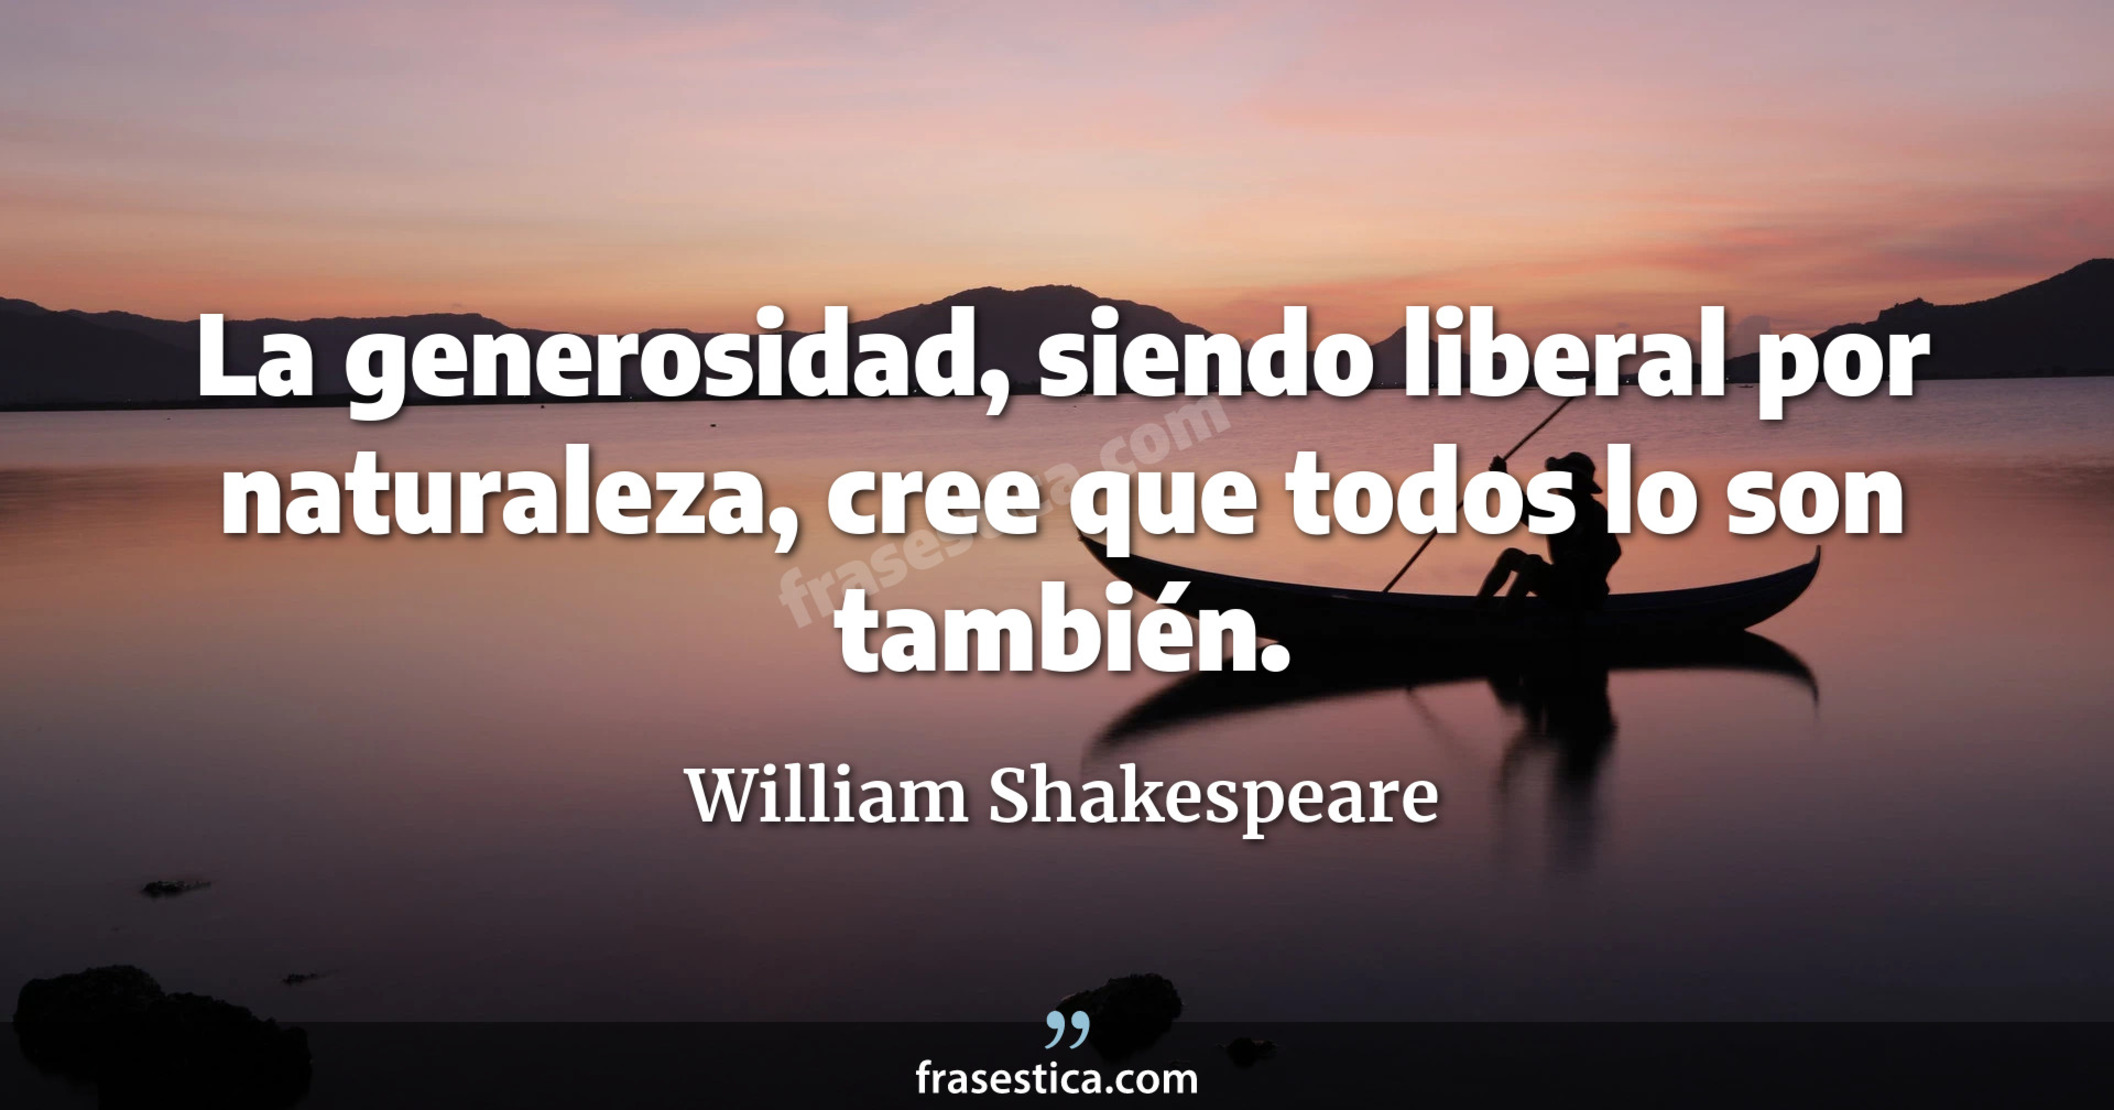 La generosidad, siendo liberal por naturaleza, cree que todos lo son también. - William Shakespeare